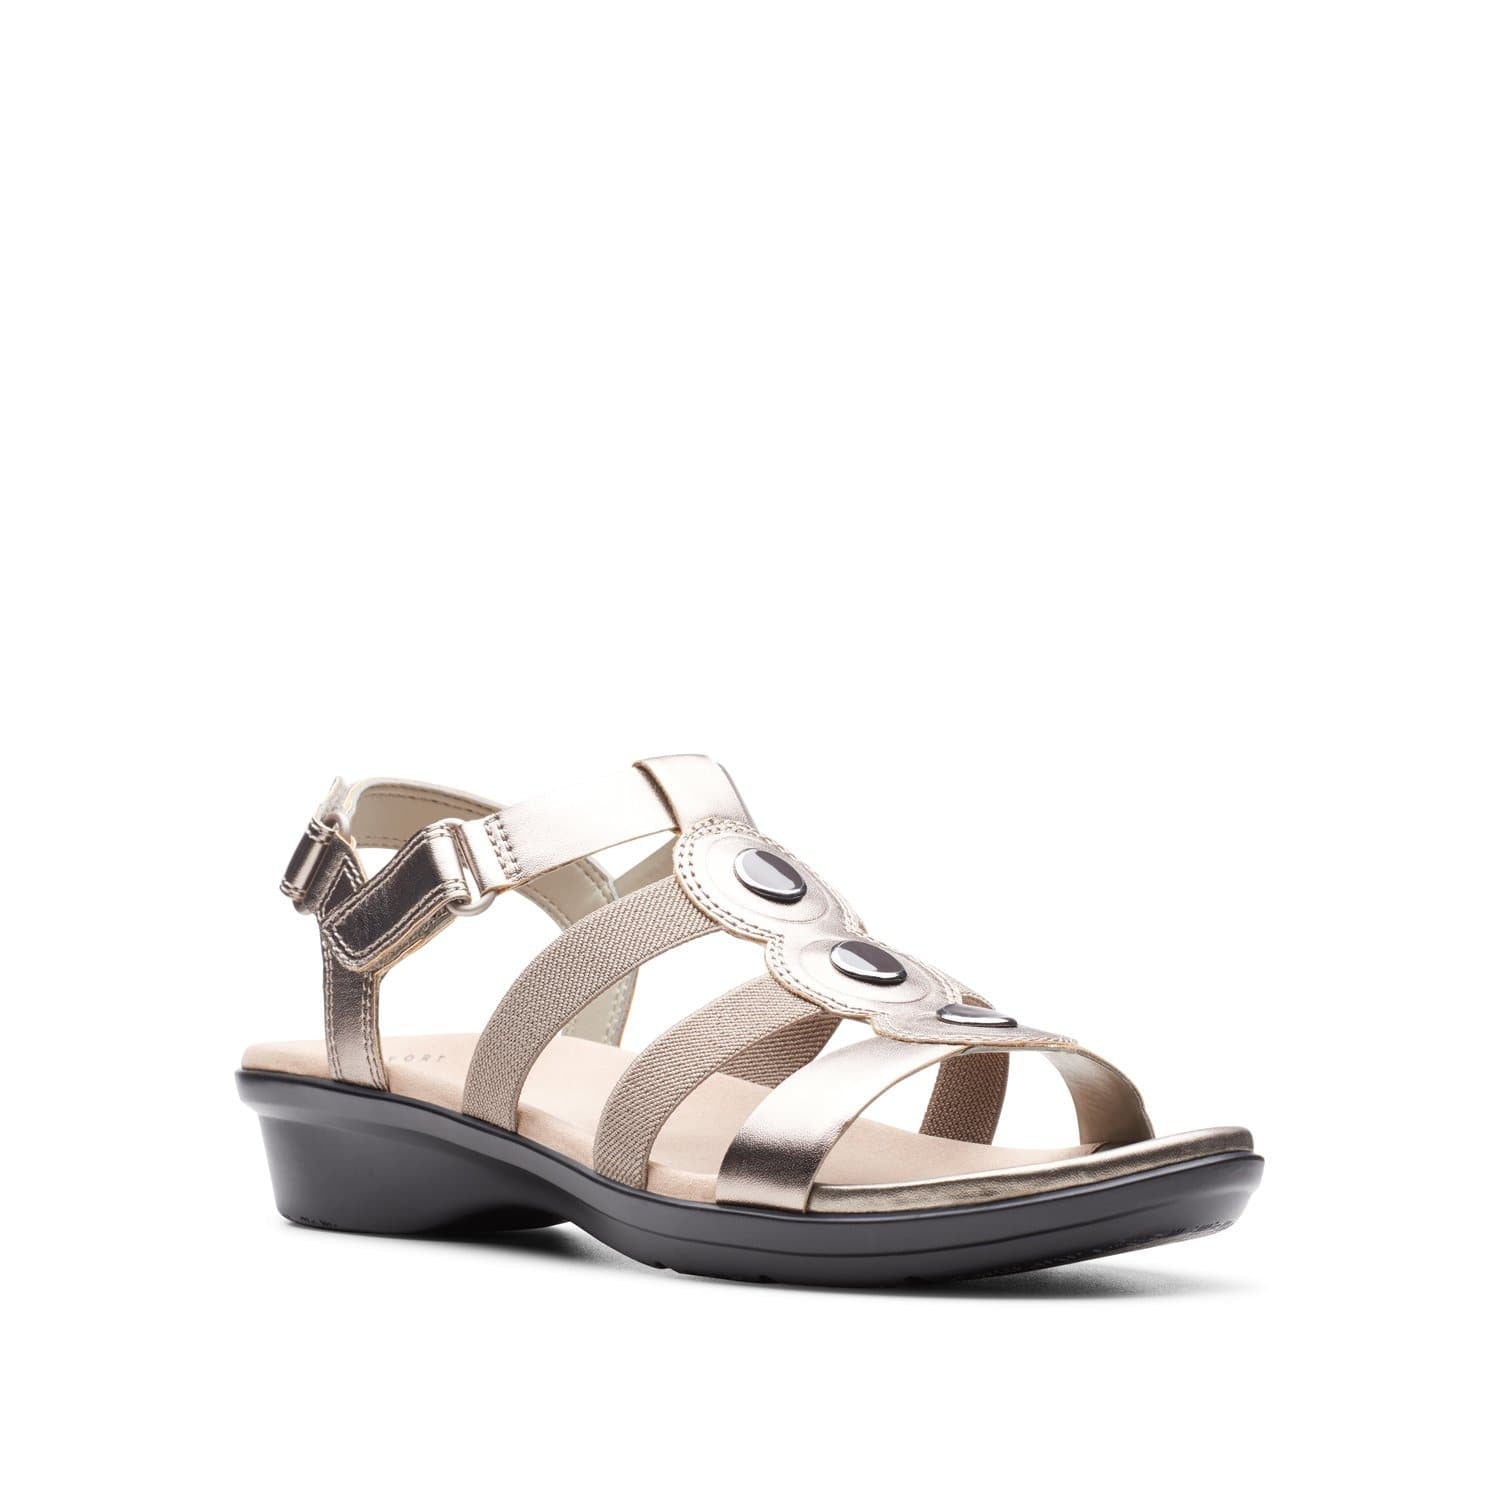 Clarks-Loomis-Harbor-Women's-Sandals-Pewter-Metallic-26146339